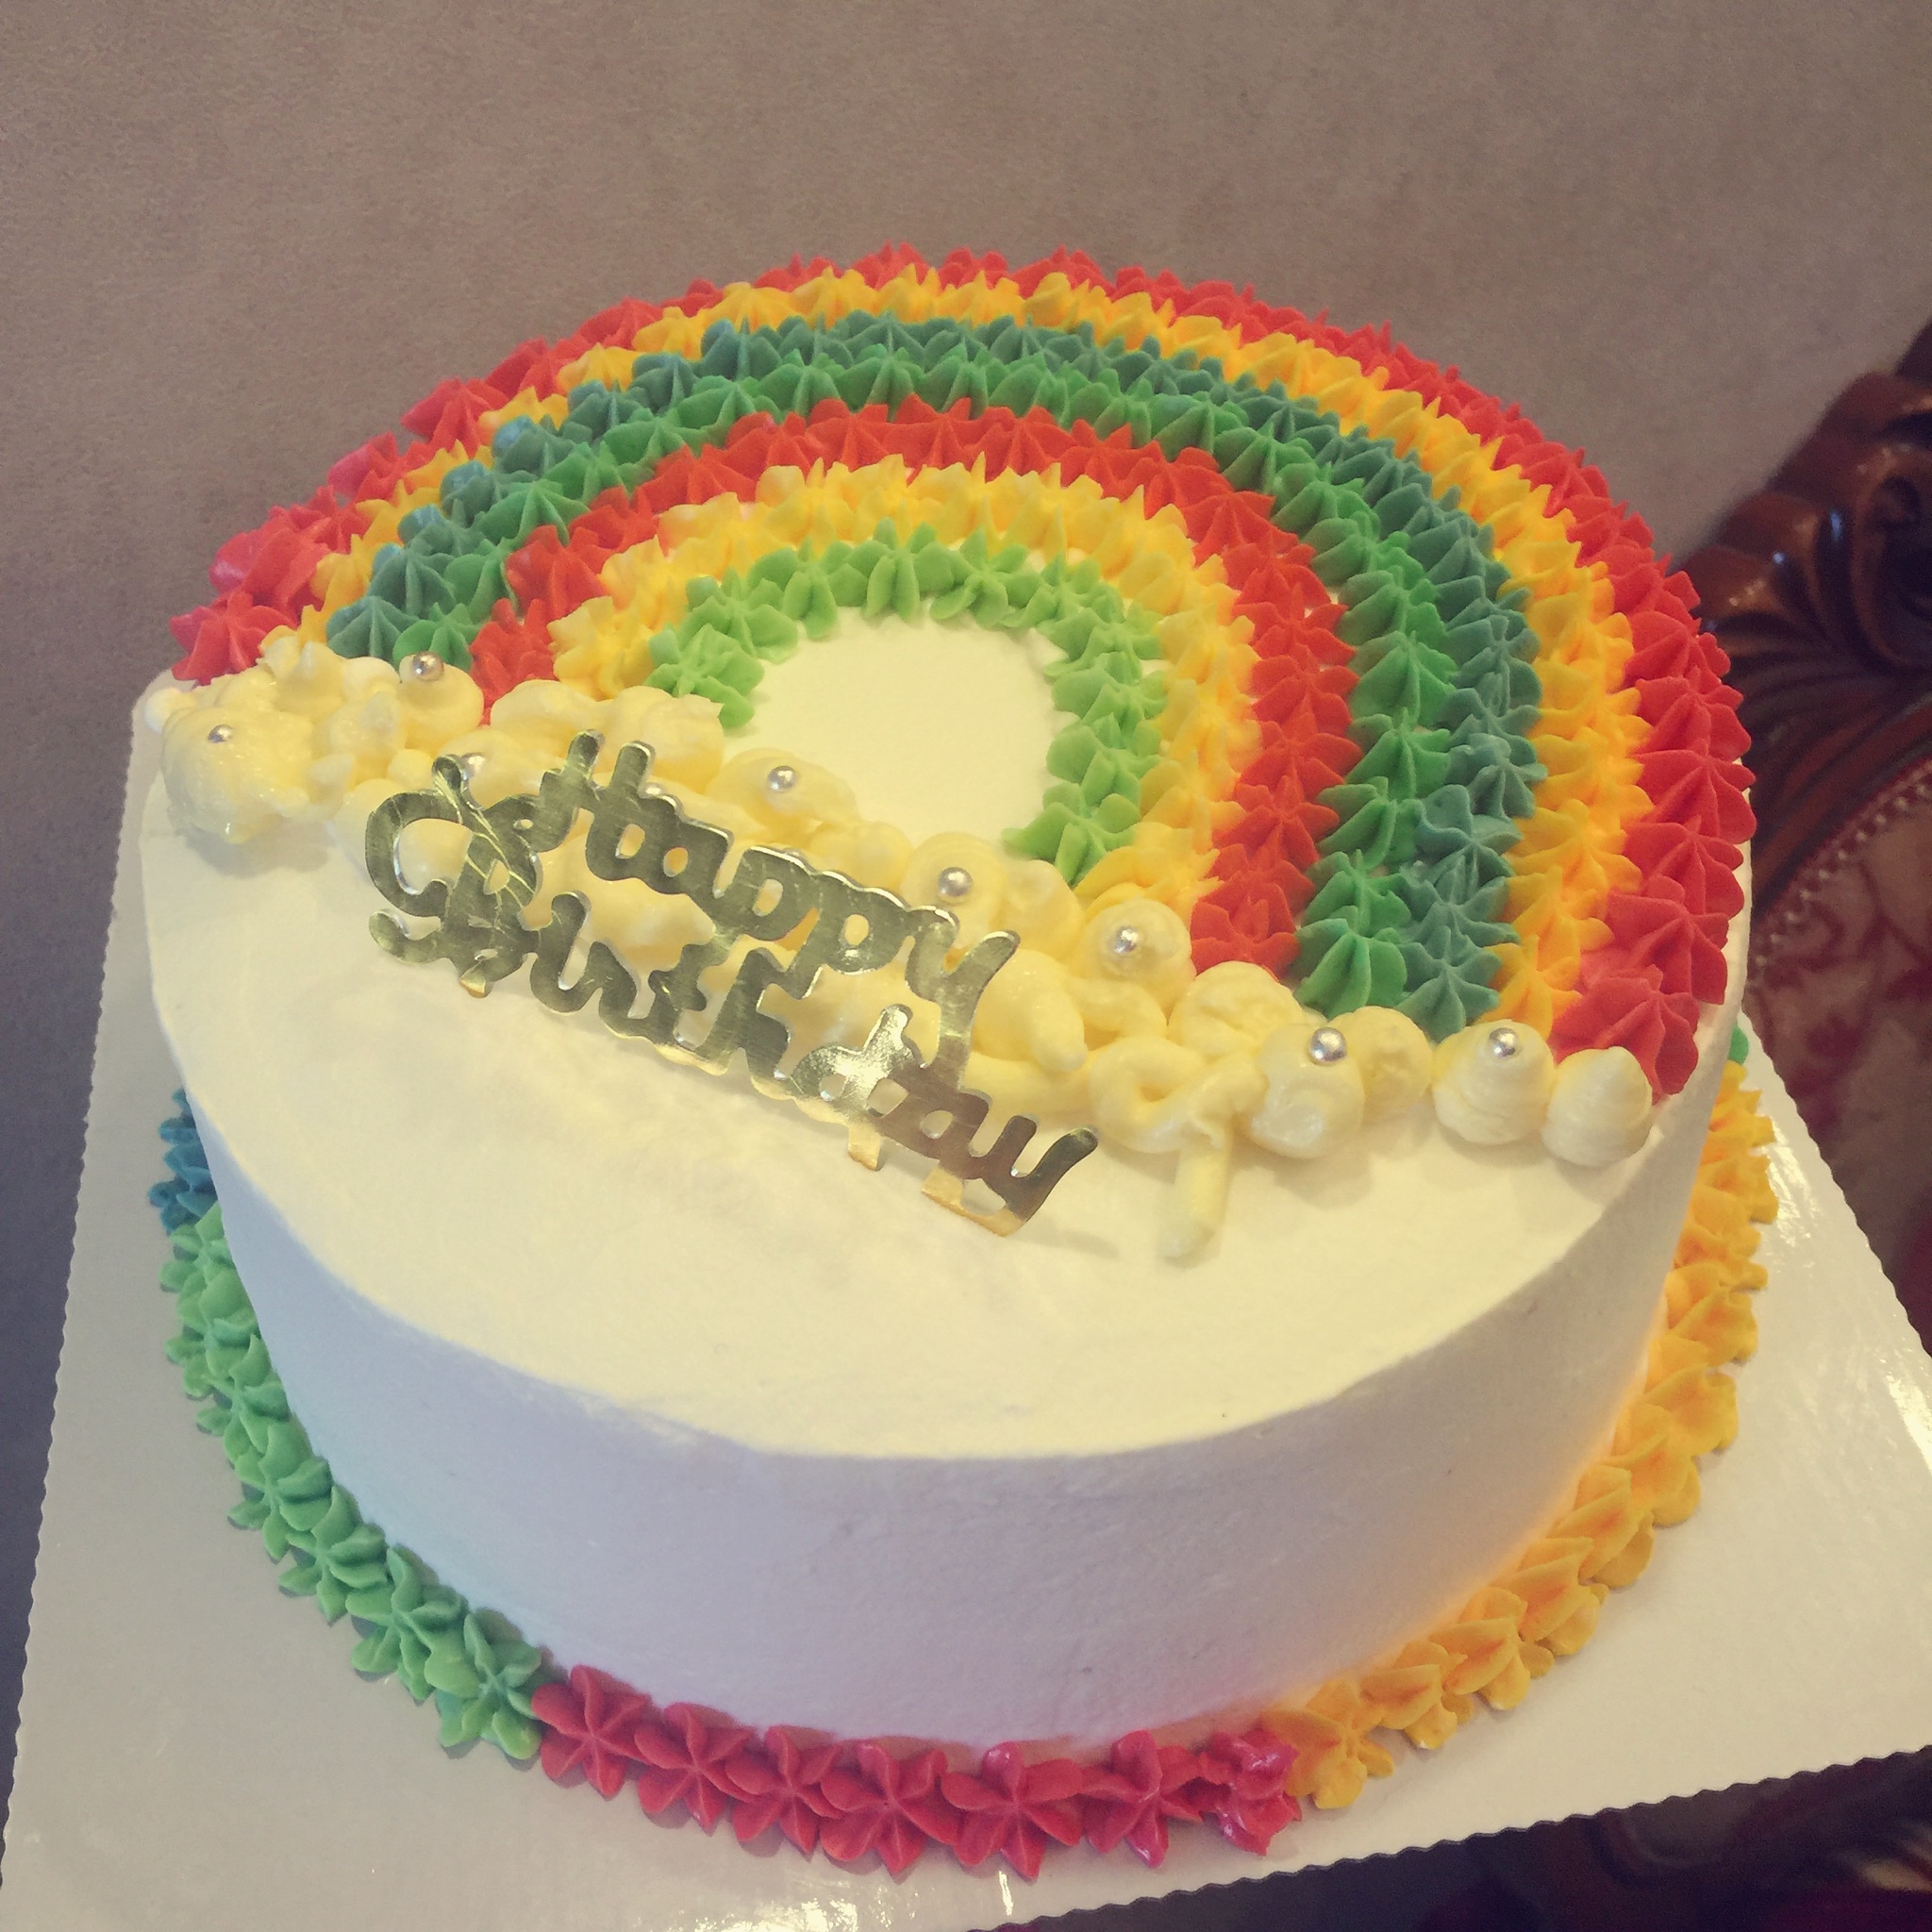 糖尿病人福利木糖醇彩虹生日蛋糕的做法